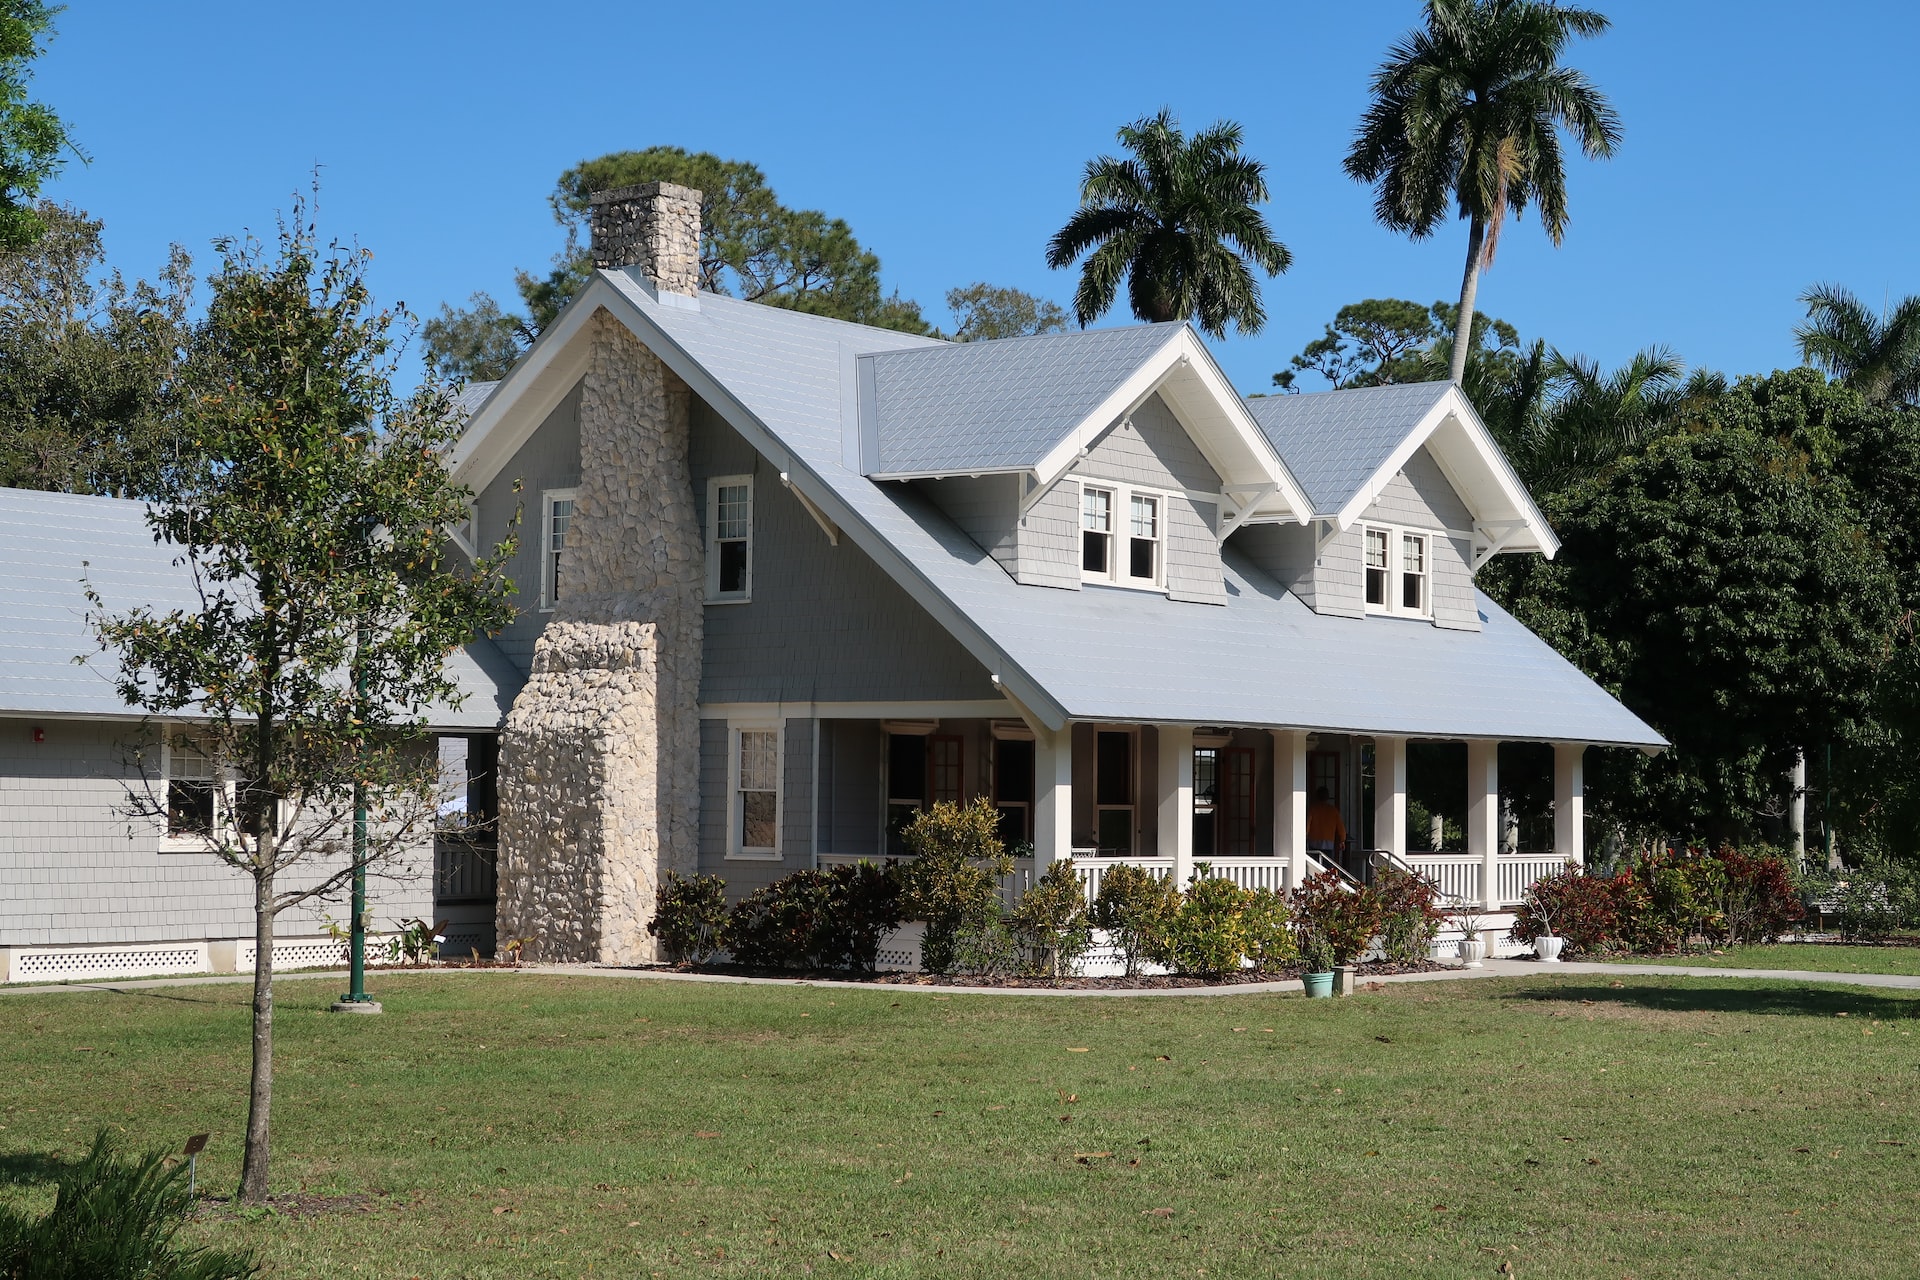 Einstöckiges Einfamilienhaus mit grauem Dach und Garten